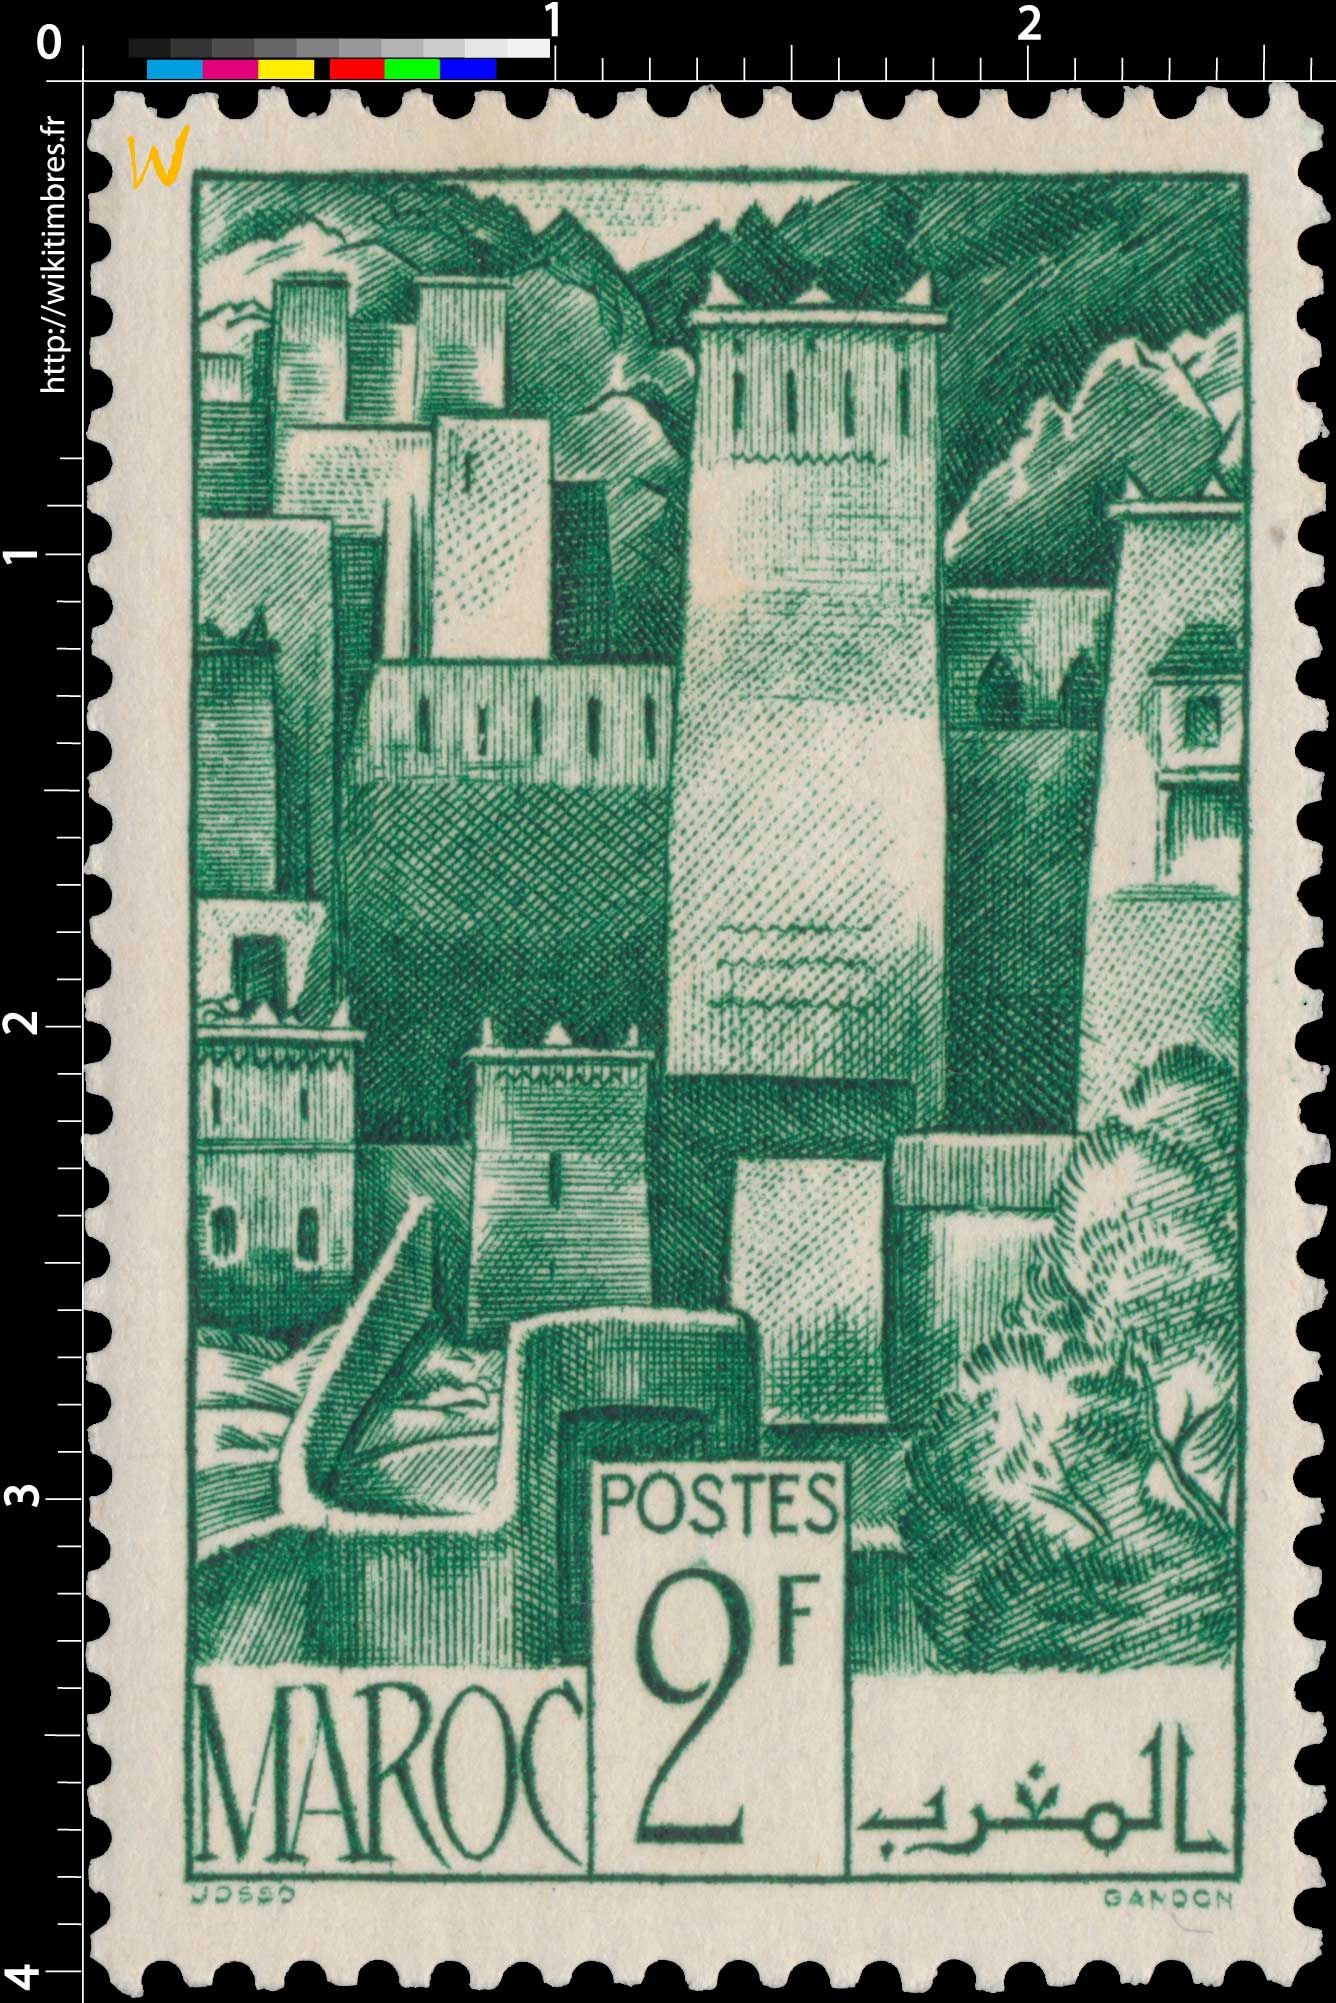 1947 Maroc - Kasbah de l'Atlas